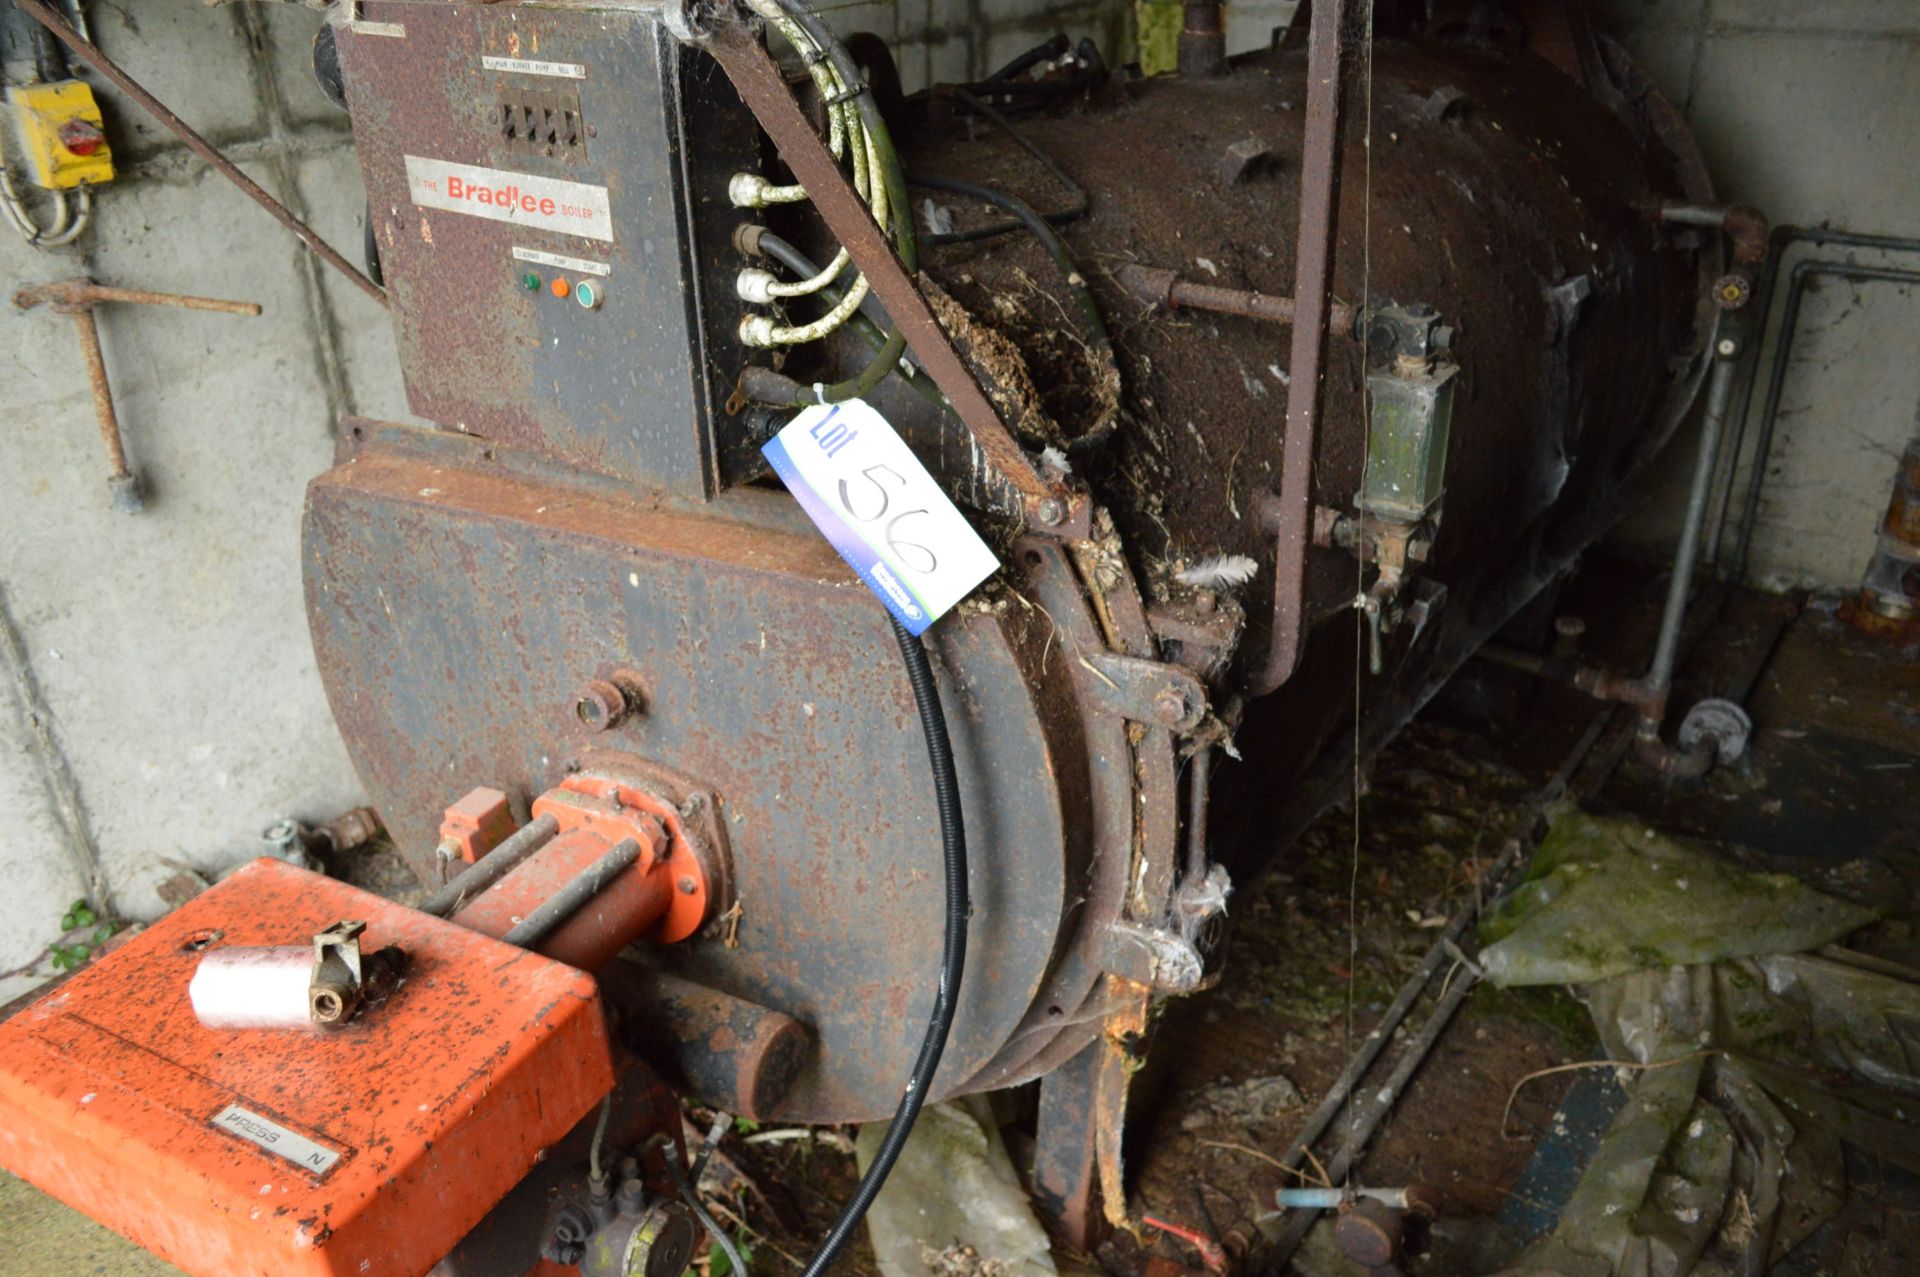 Bradlee S46B Oil Fired Steam Boiler